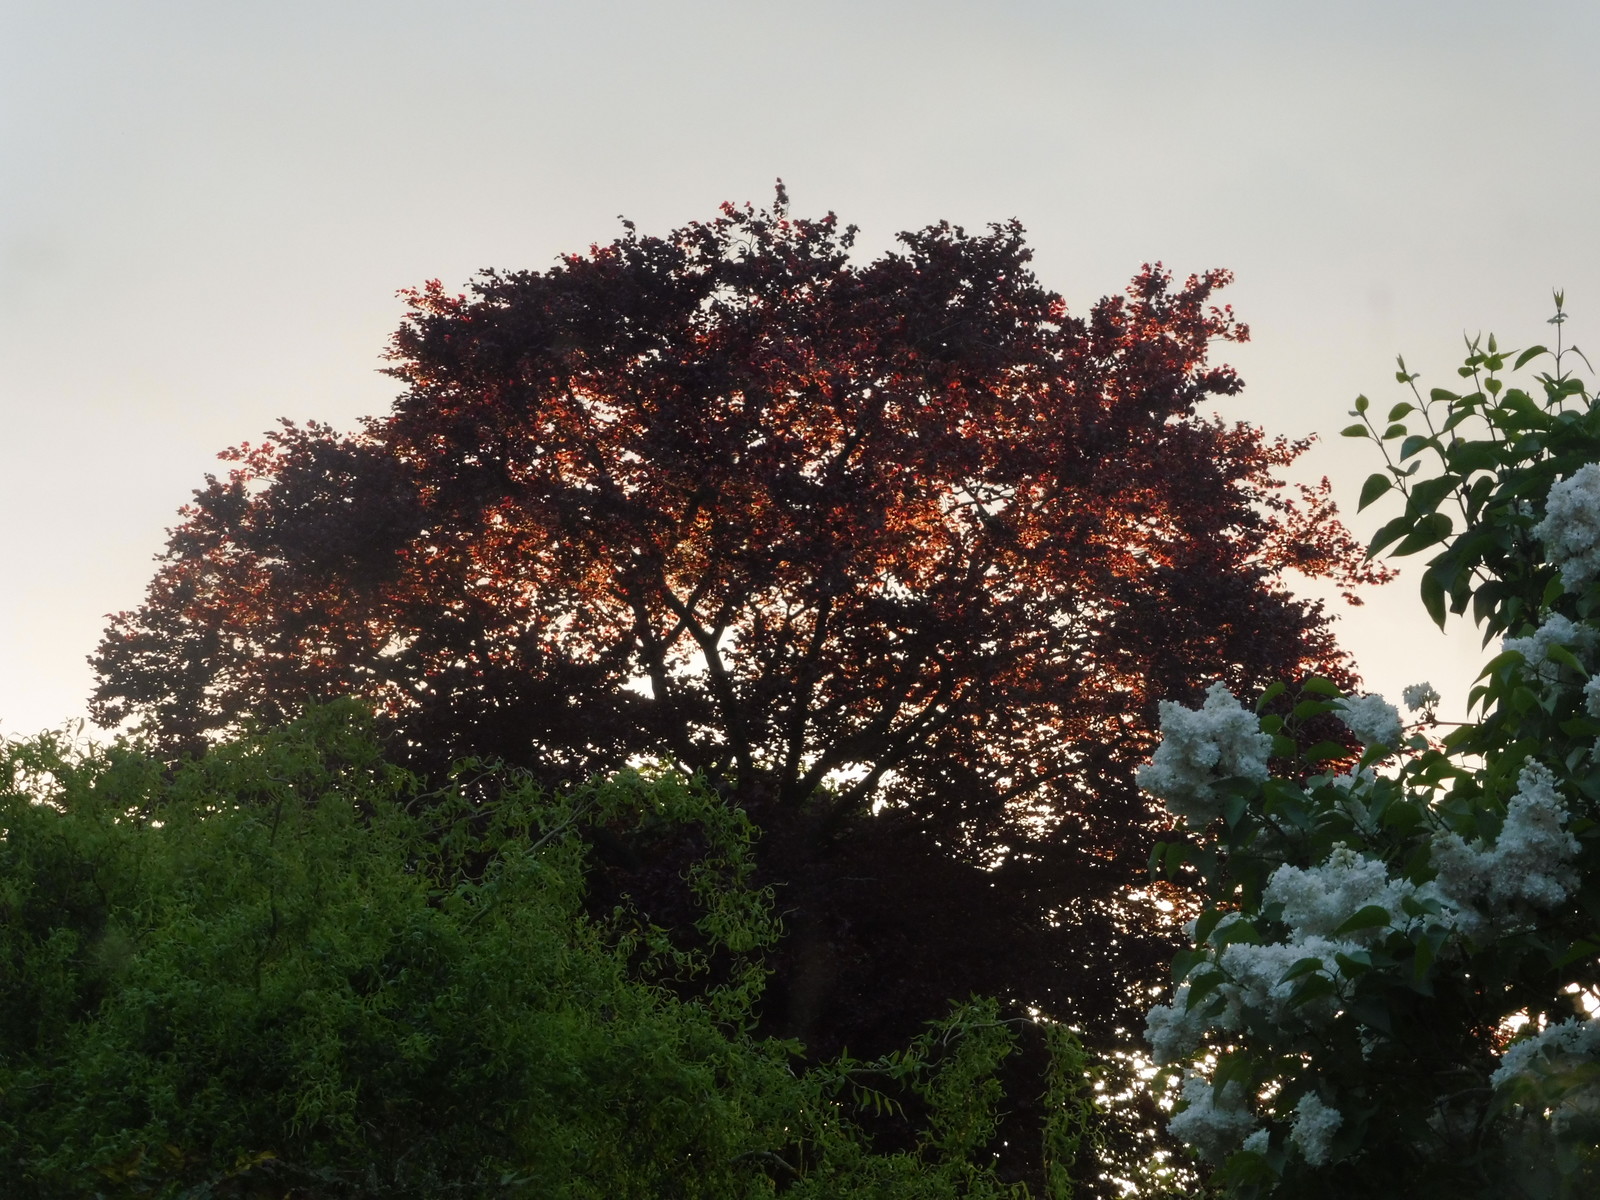 Sunlit Beech Tree